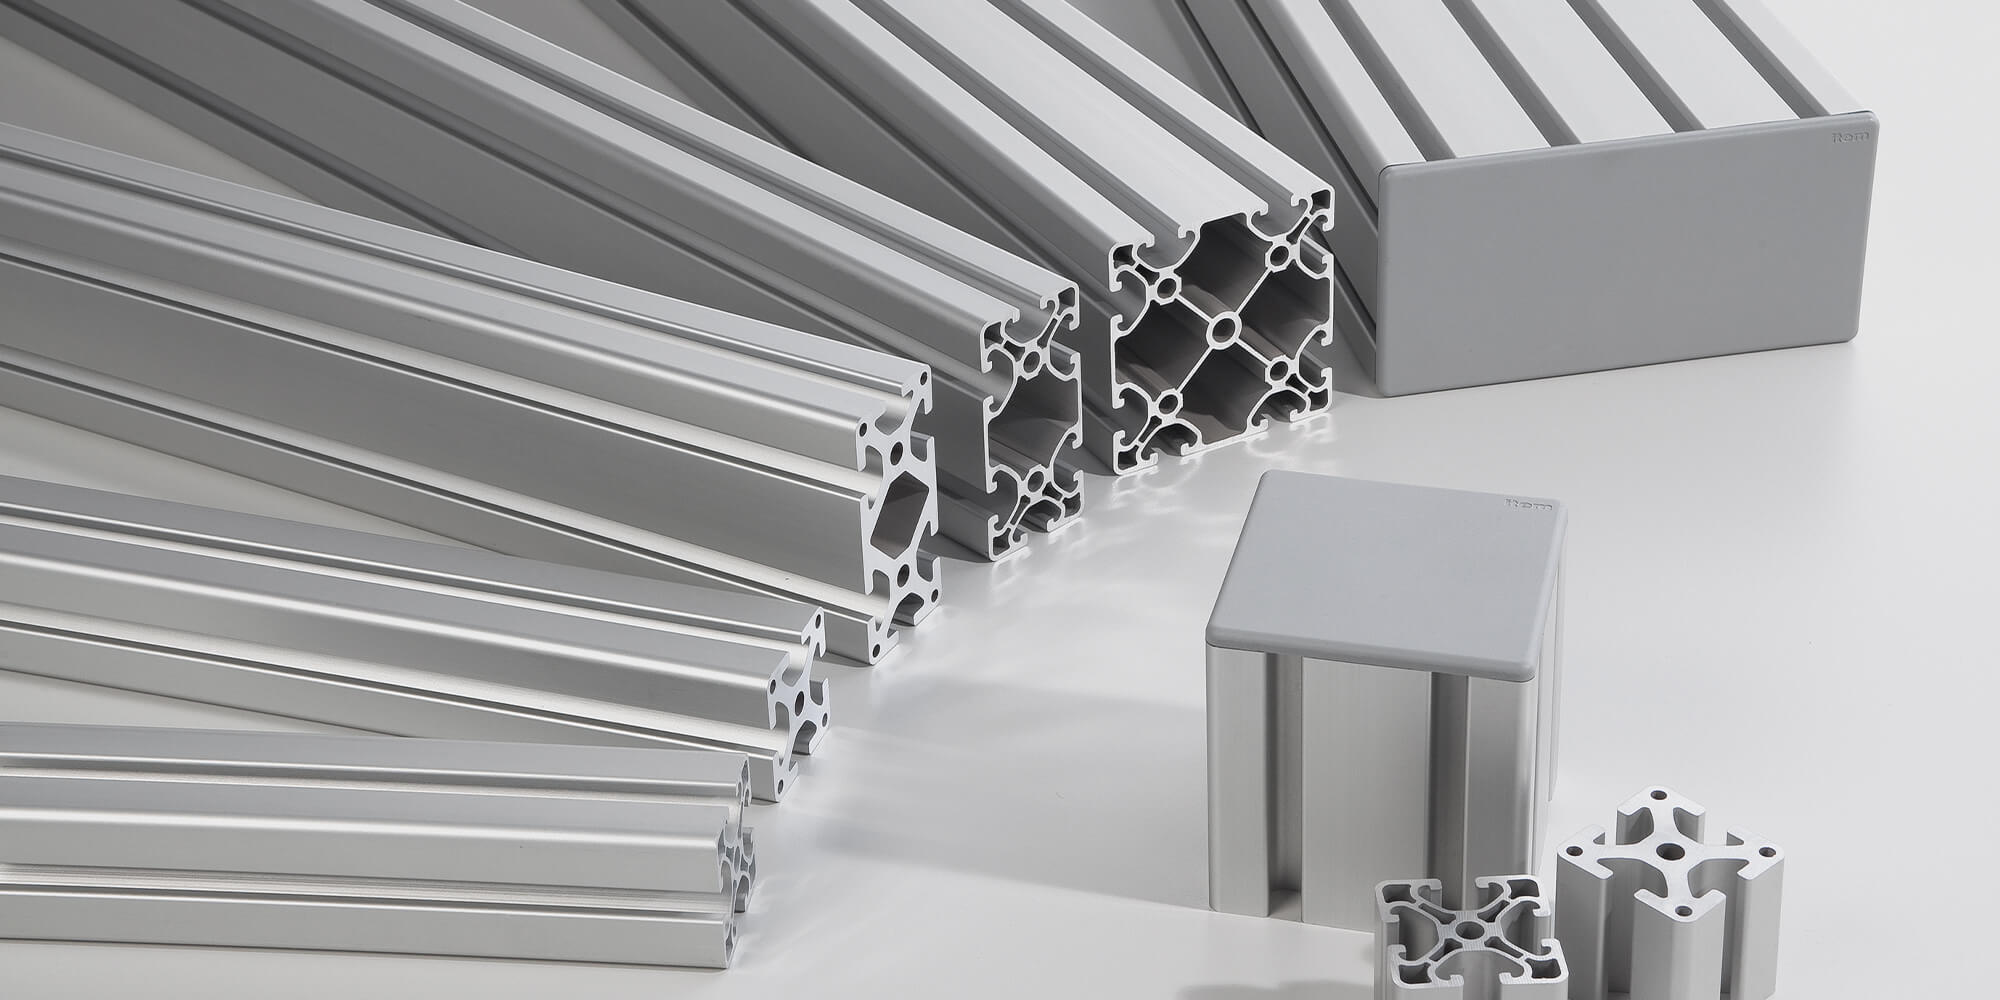 Tecnica dei profilati in alluminio: come le idee diventano realtà